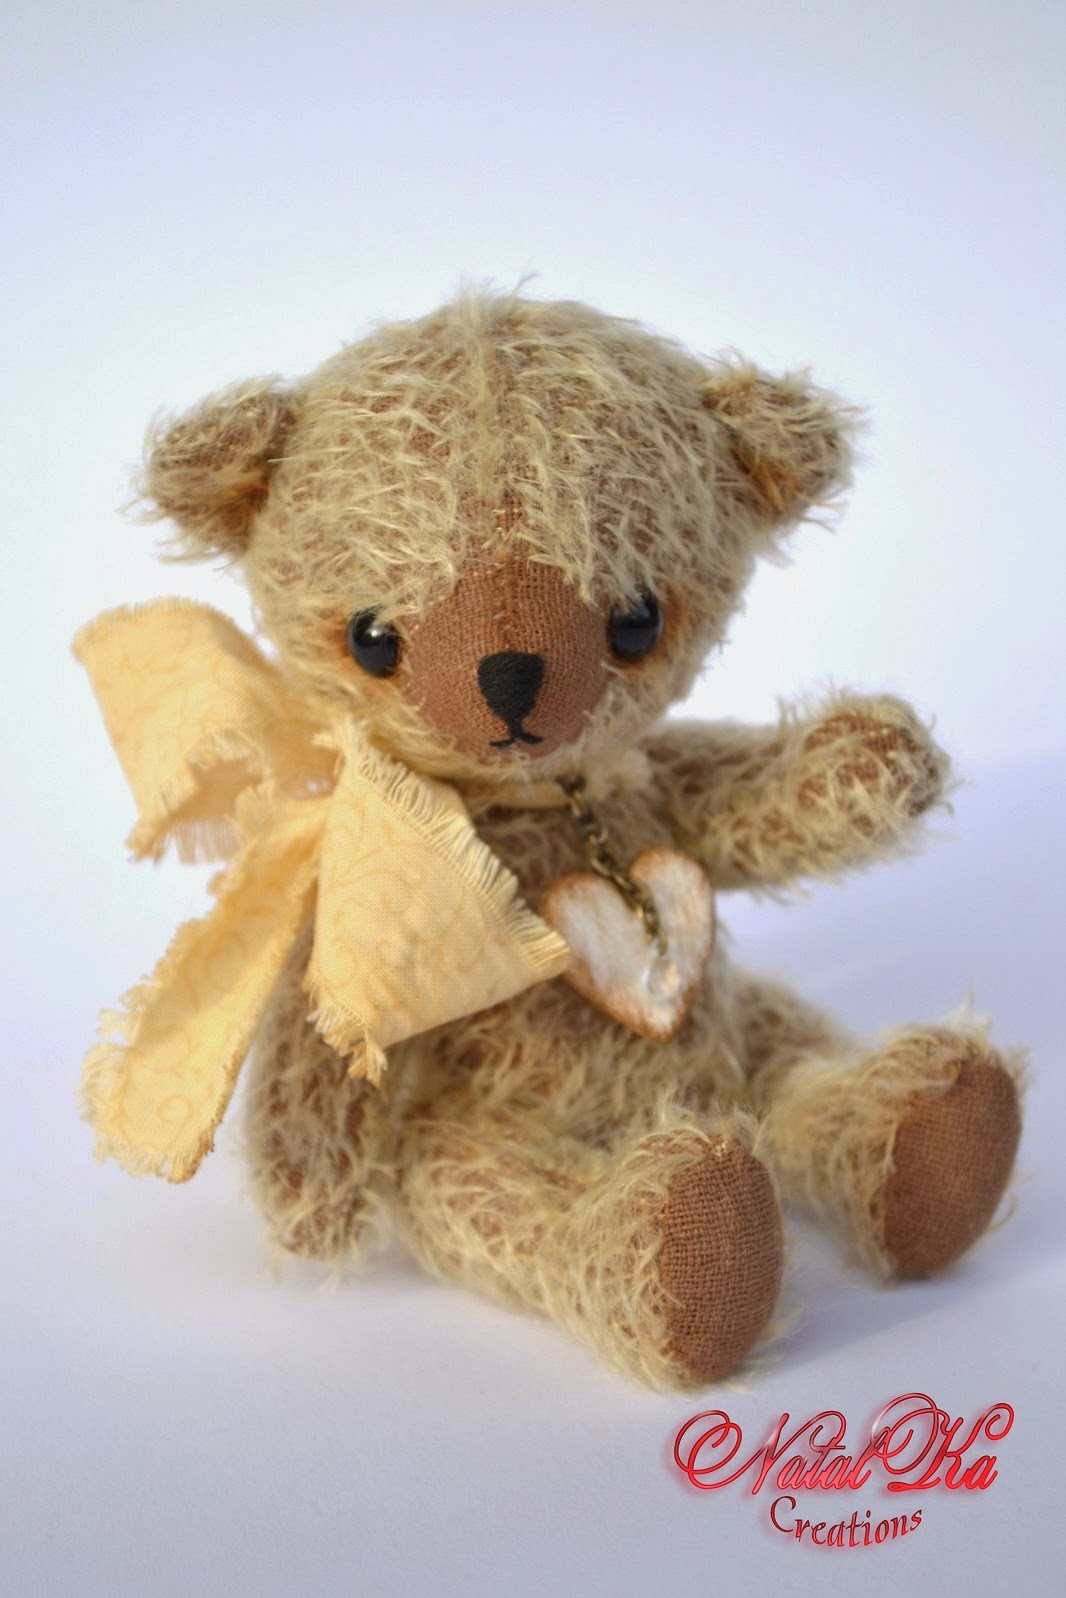 Künstler Teddybär handgemacht von NatalKa Creations. Artis teddy bear handmade by NatalKa Creations.